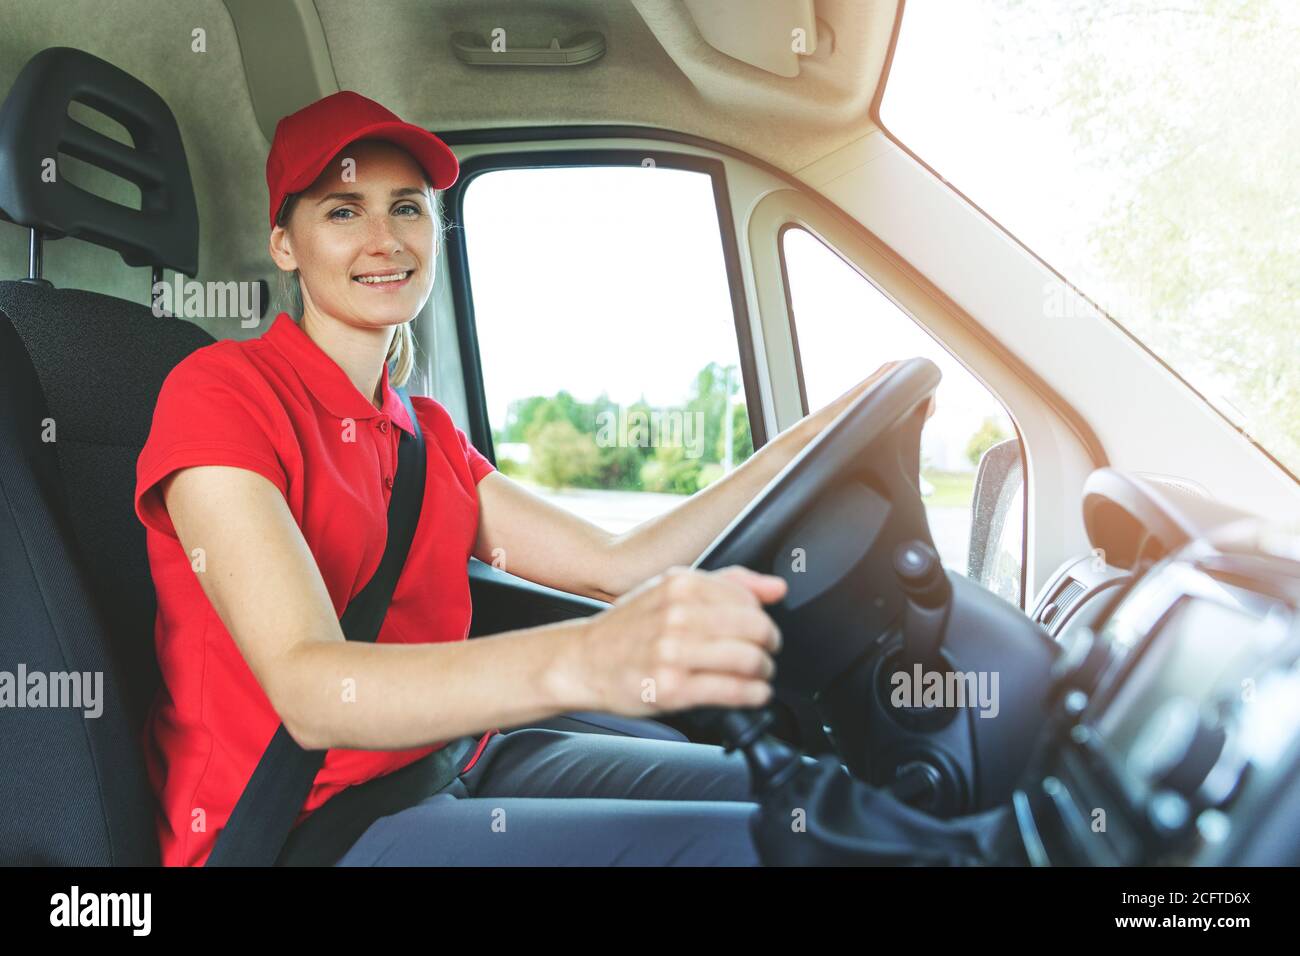 Transport Services - junge weibliche Fahrer in roten Uniform fahren einen Van. Lächelnd an der Kamera Stockfoto